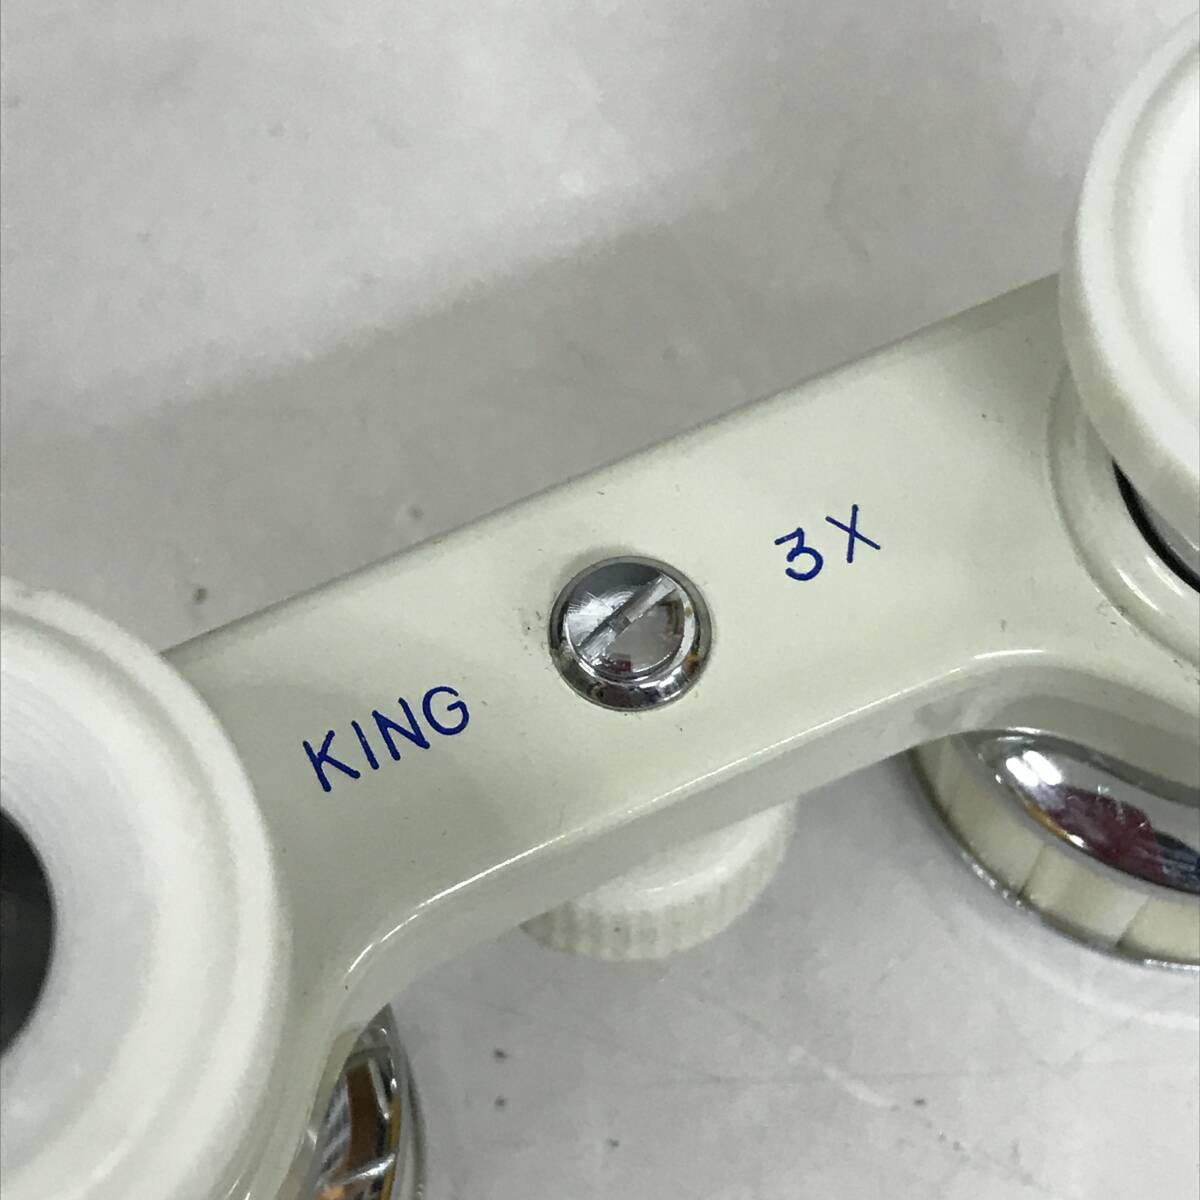 BF11/94 KING King театральный бинокль 3× белый кожанный кейс имеется бинокль 3 раз retro античный #*